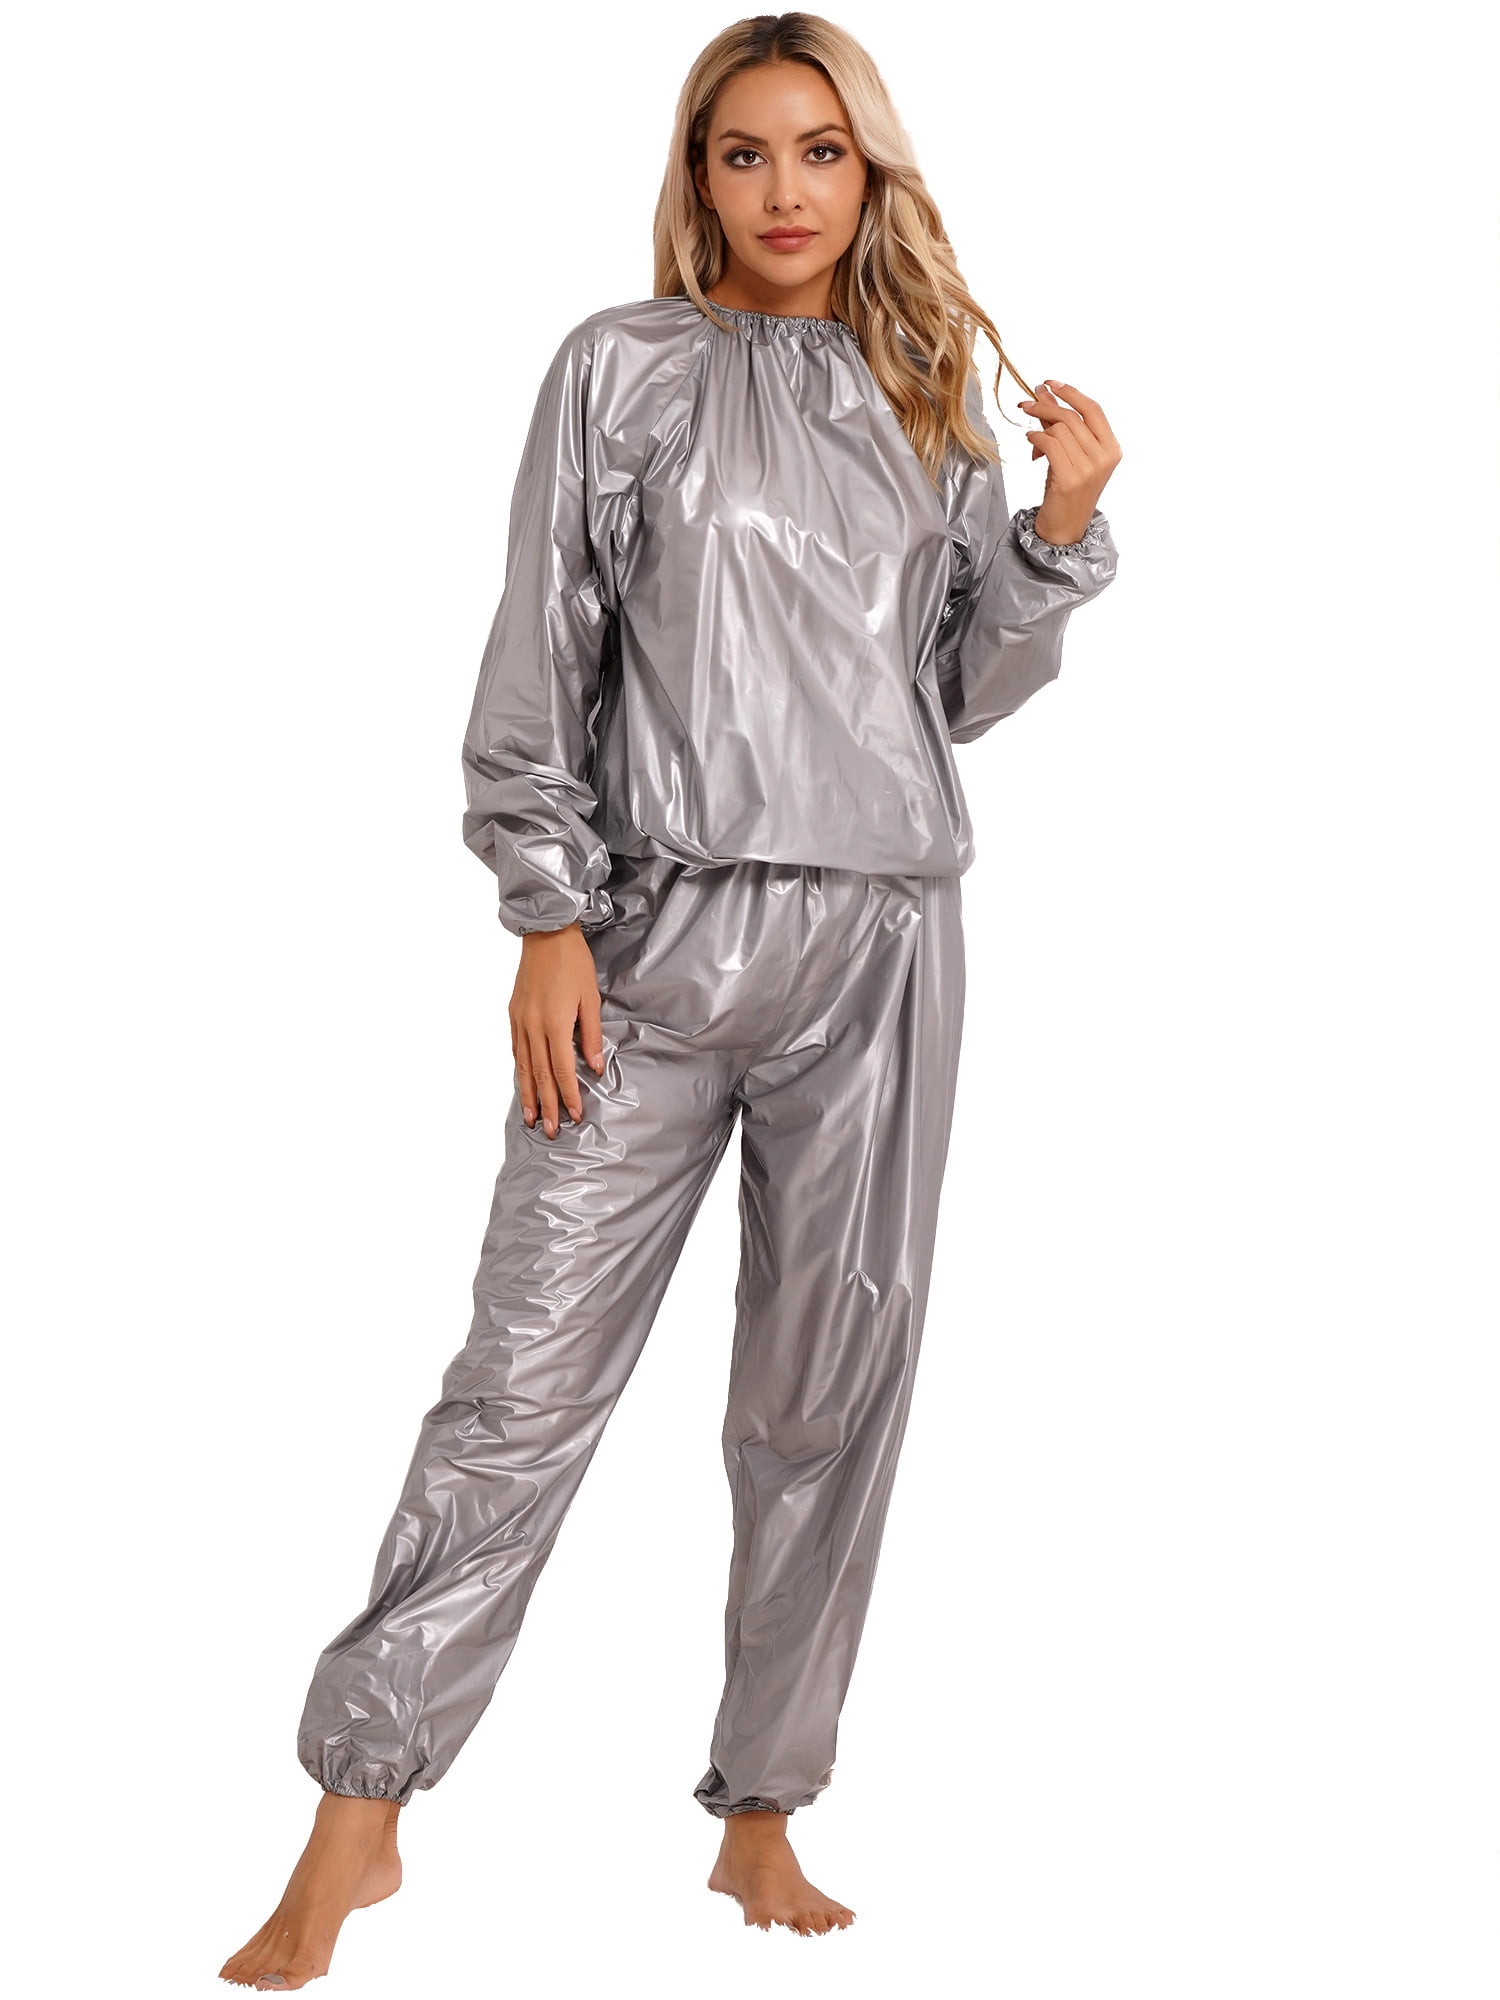 iEFiEL Womens Sauna Suit Long Sleeve PVC Tops with Pants Set Sweat Suit ...